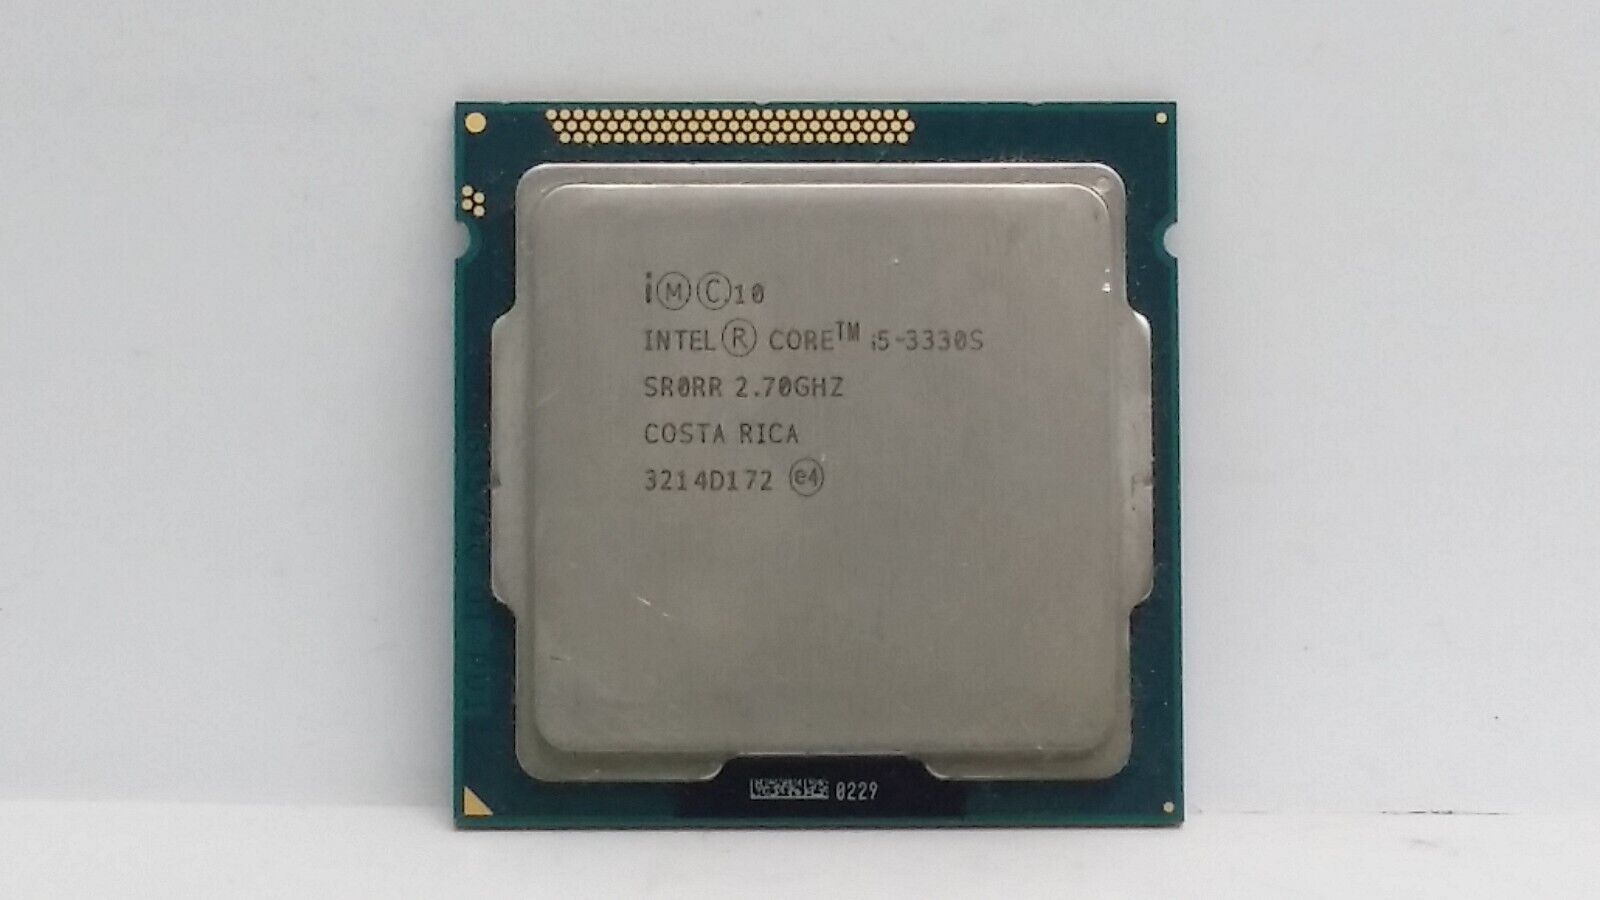 Intel Core i5-3330S 2.7GHz 6MB/5 GT/s SR0RR LGA 1155 Processor